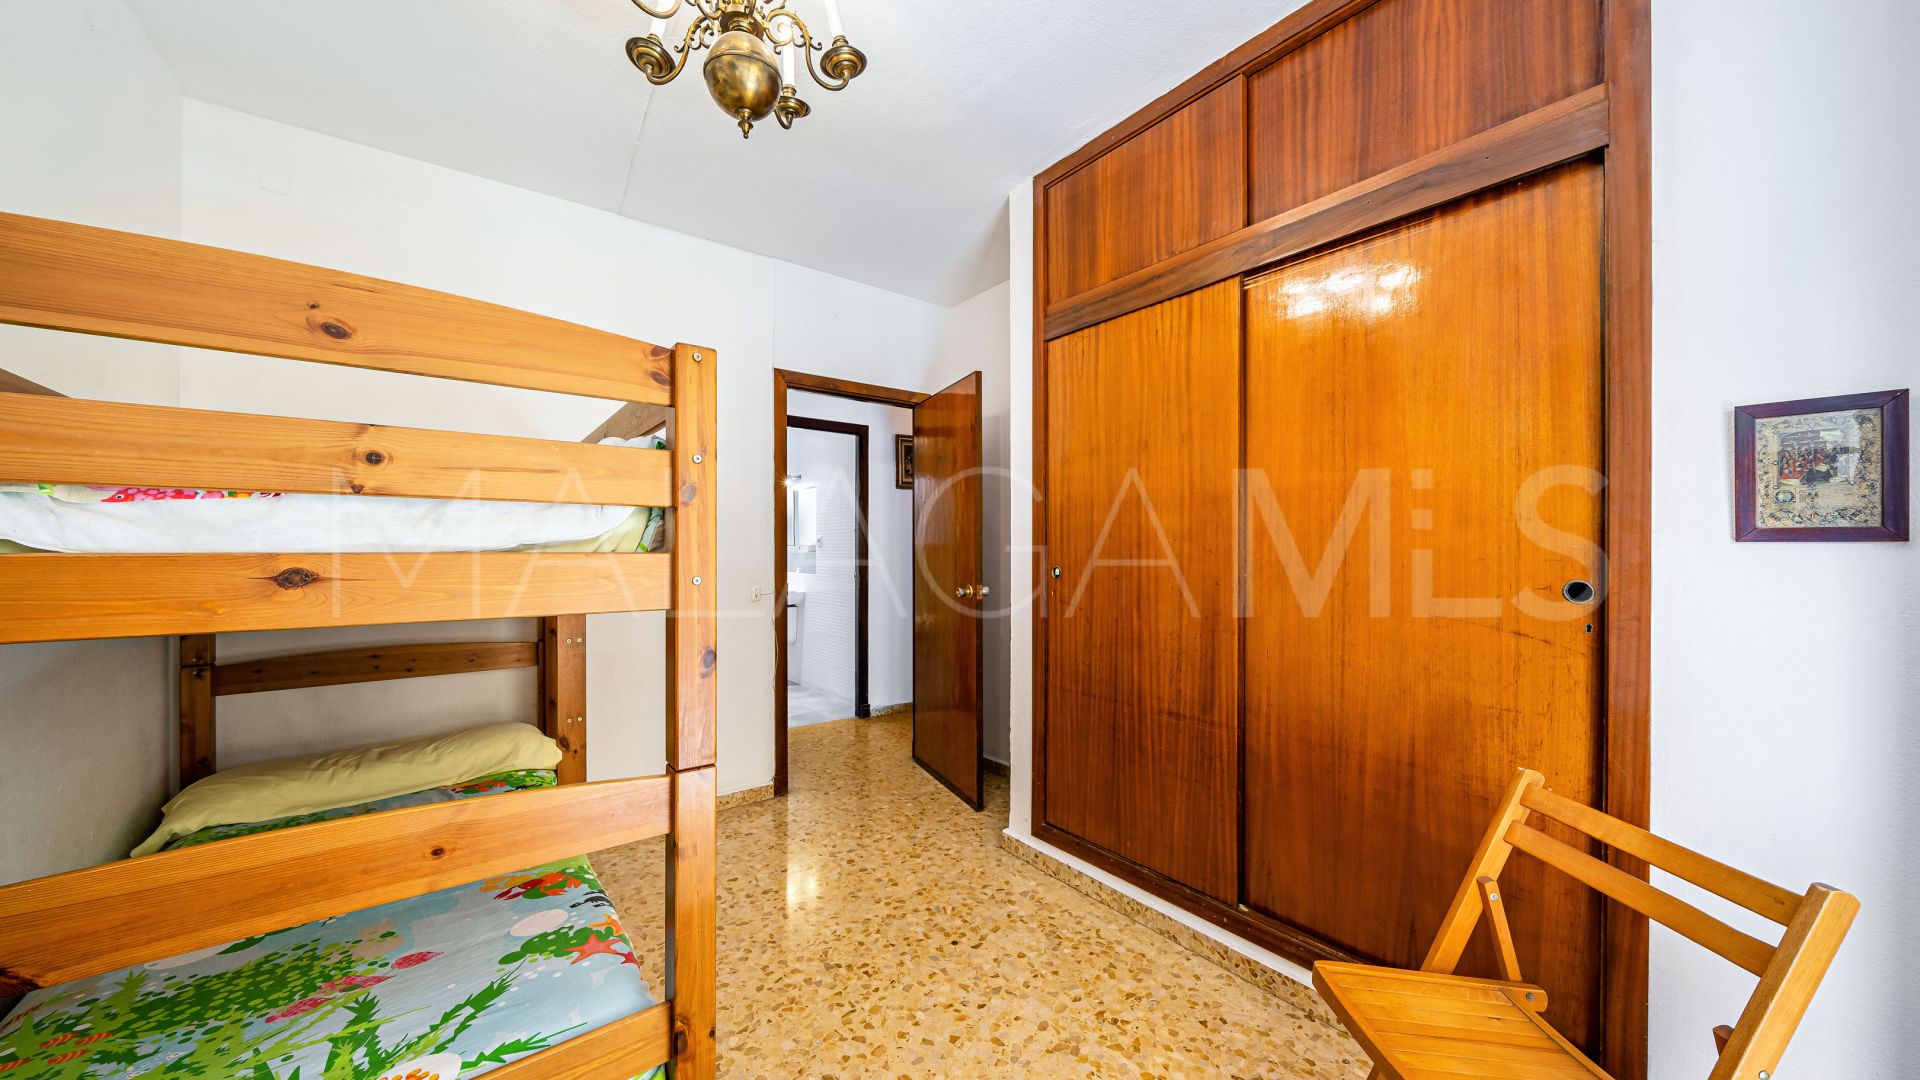 La Malagueta - La Caleta 4 bedrooms flat for sale